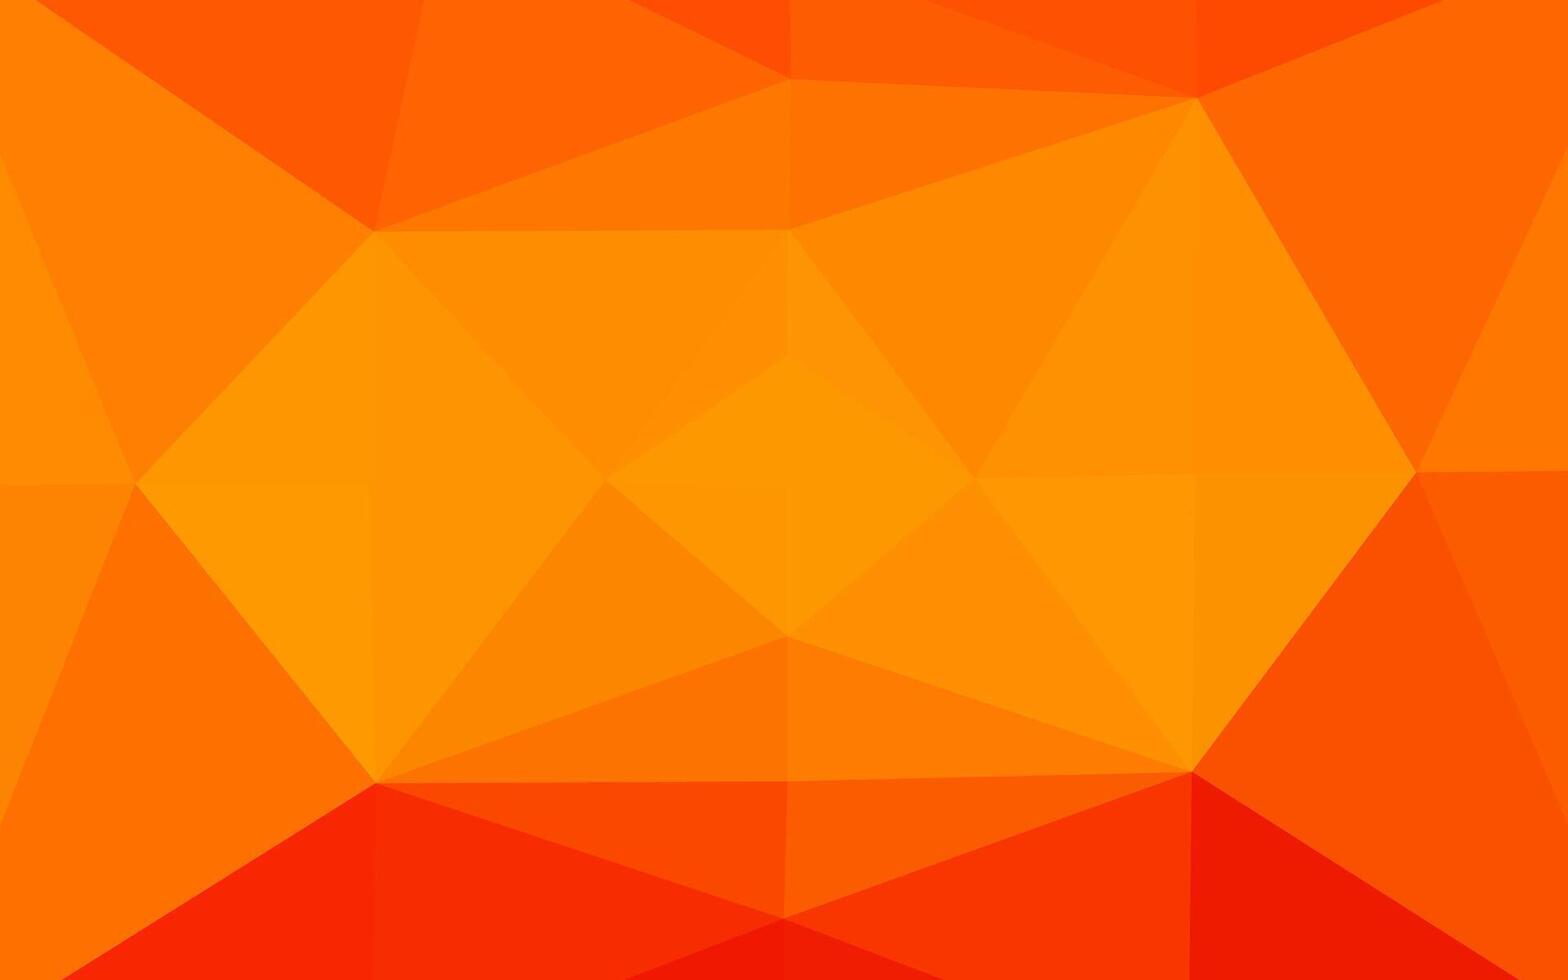 sfondo astratto mosaico vettoriale arancione chiaro.